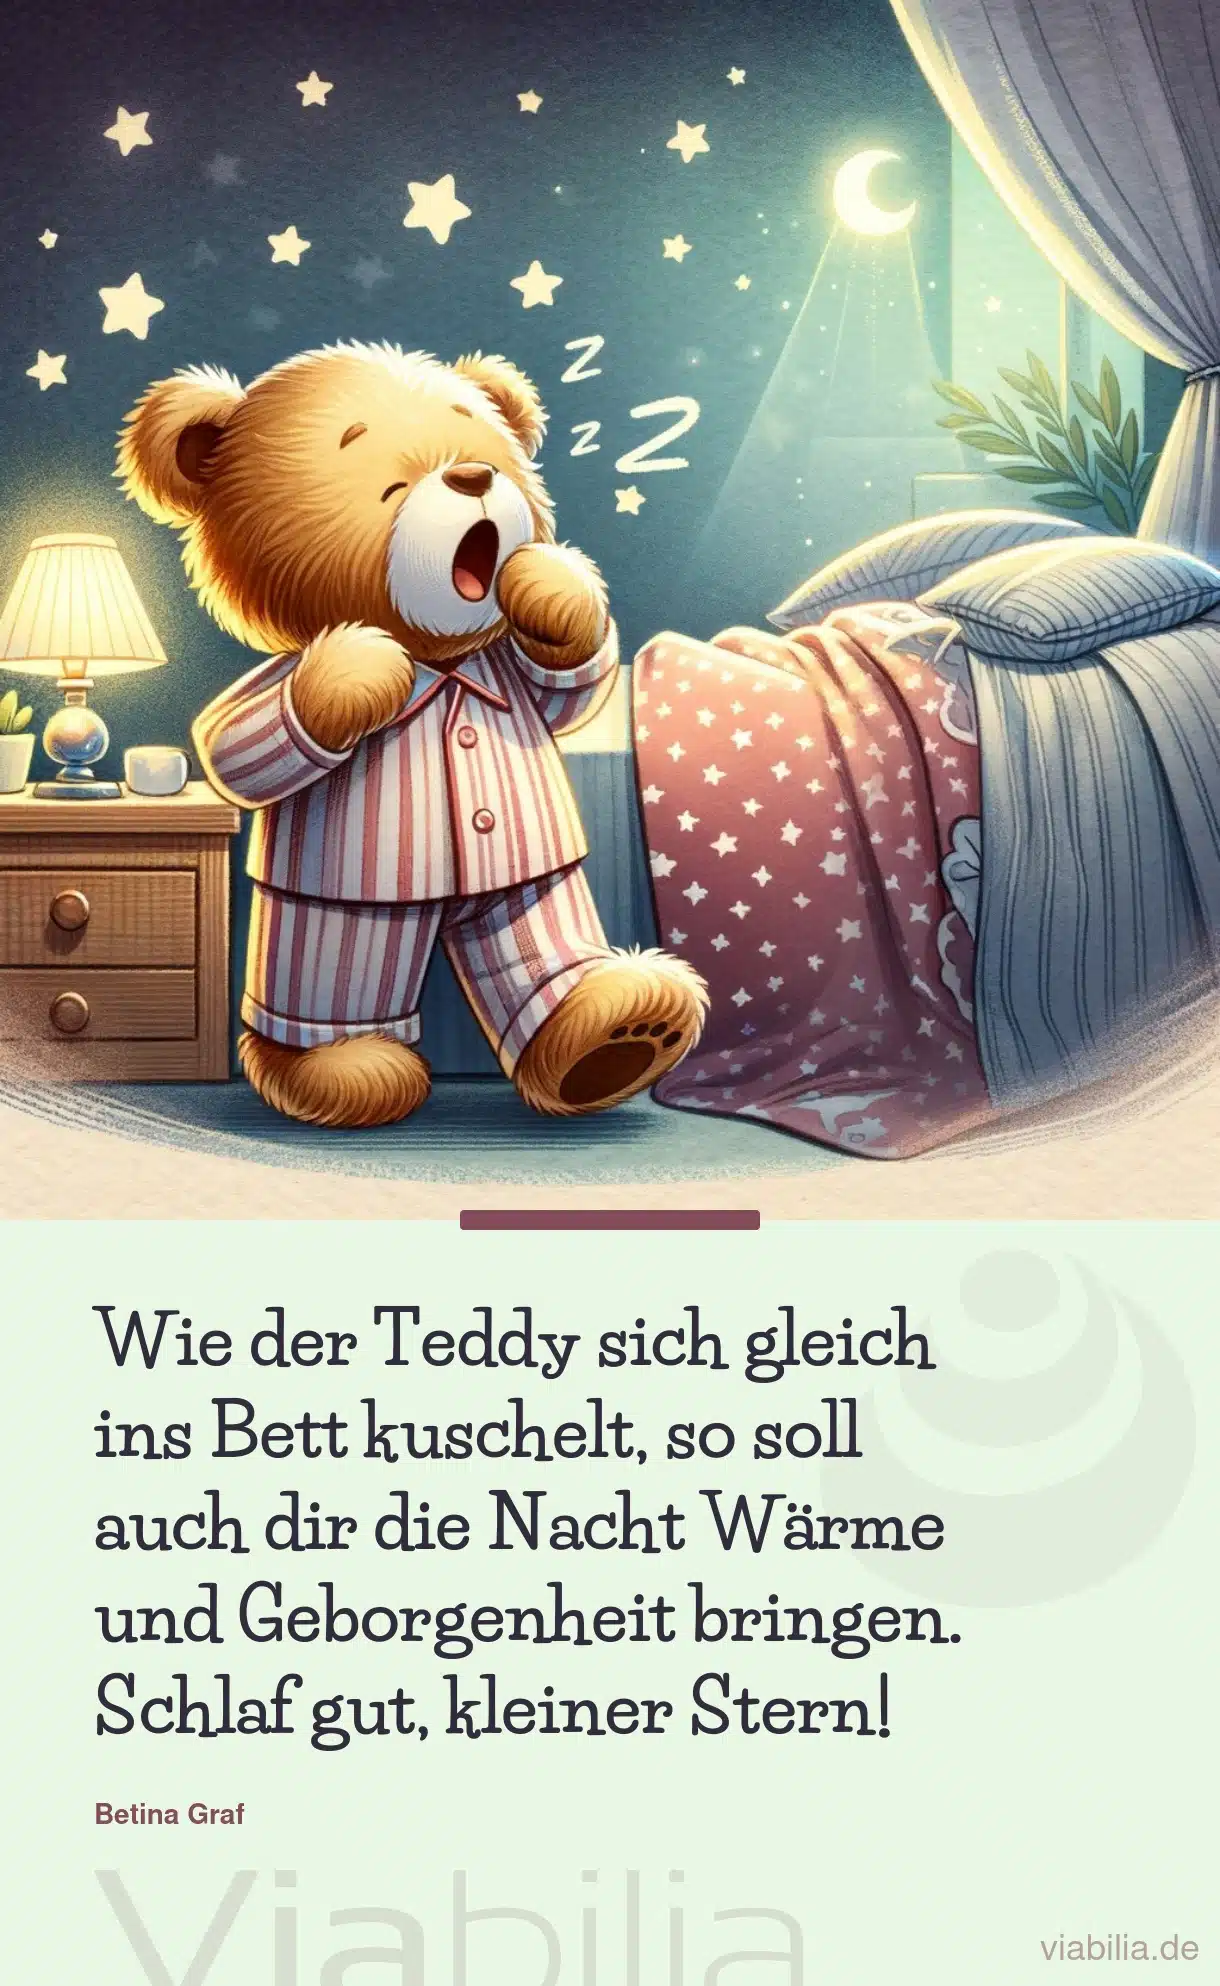 Gute Nacht Bild mit Teddy: schlaf gut, kleiner Stern